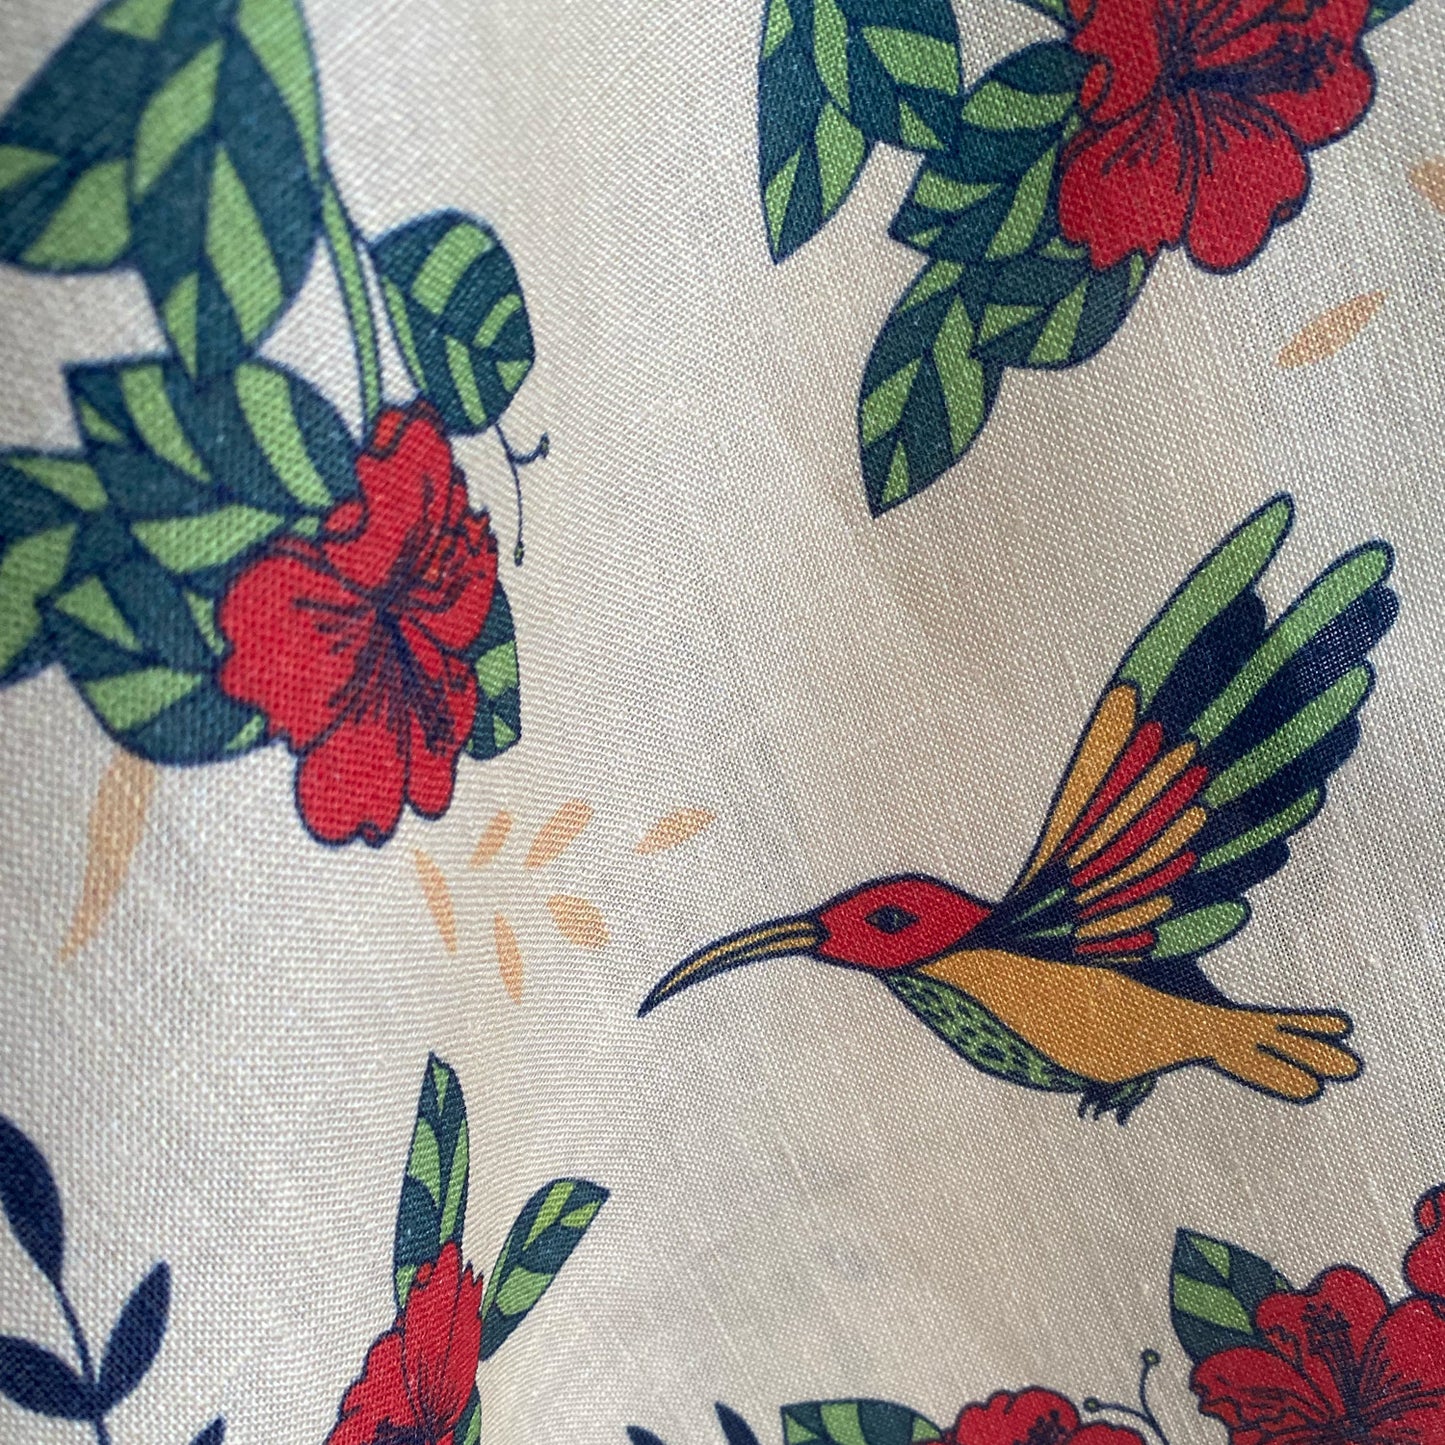 Hummingbird garden linen tea towel